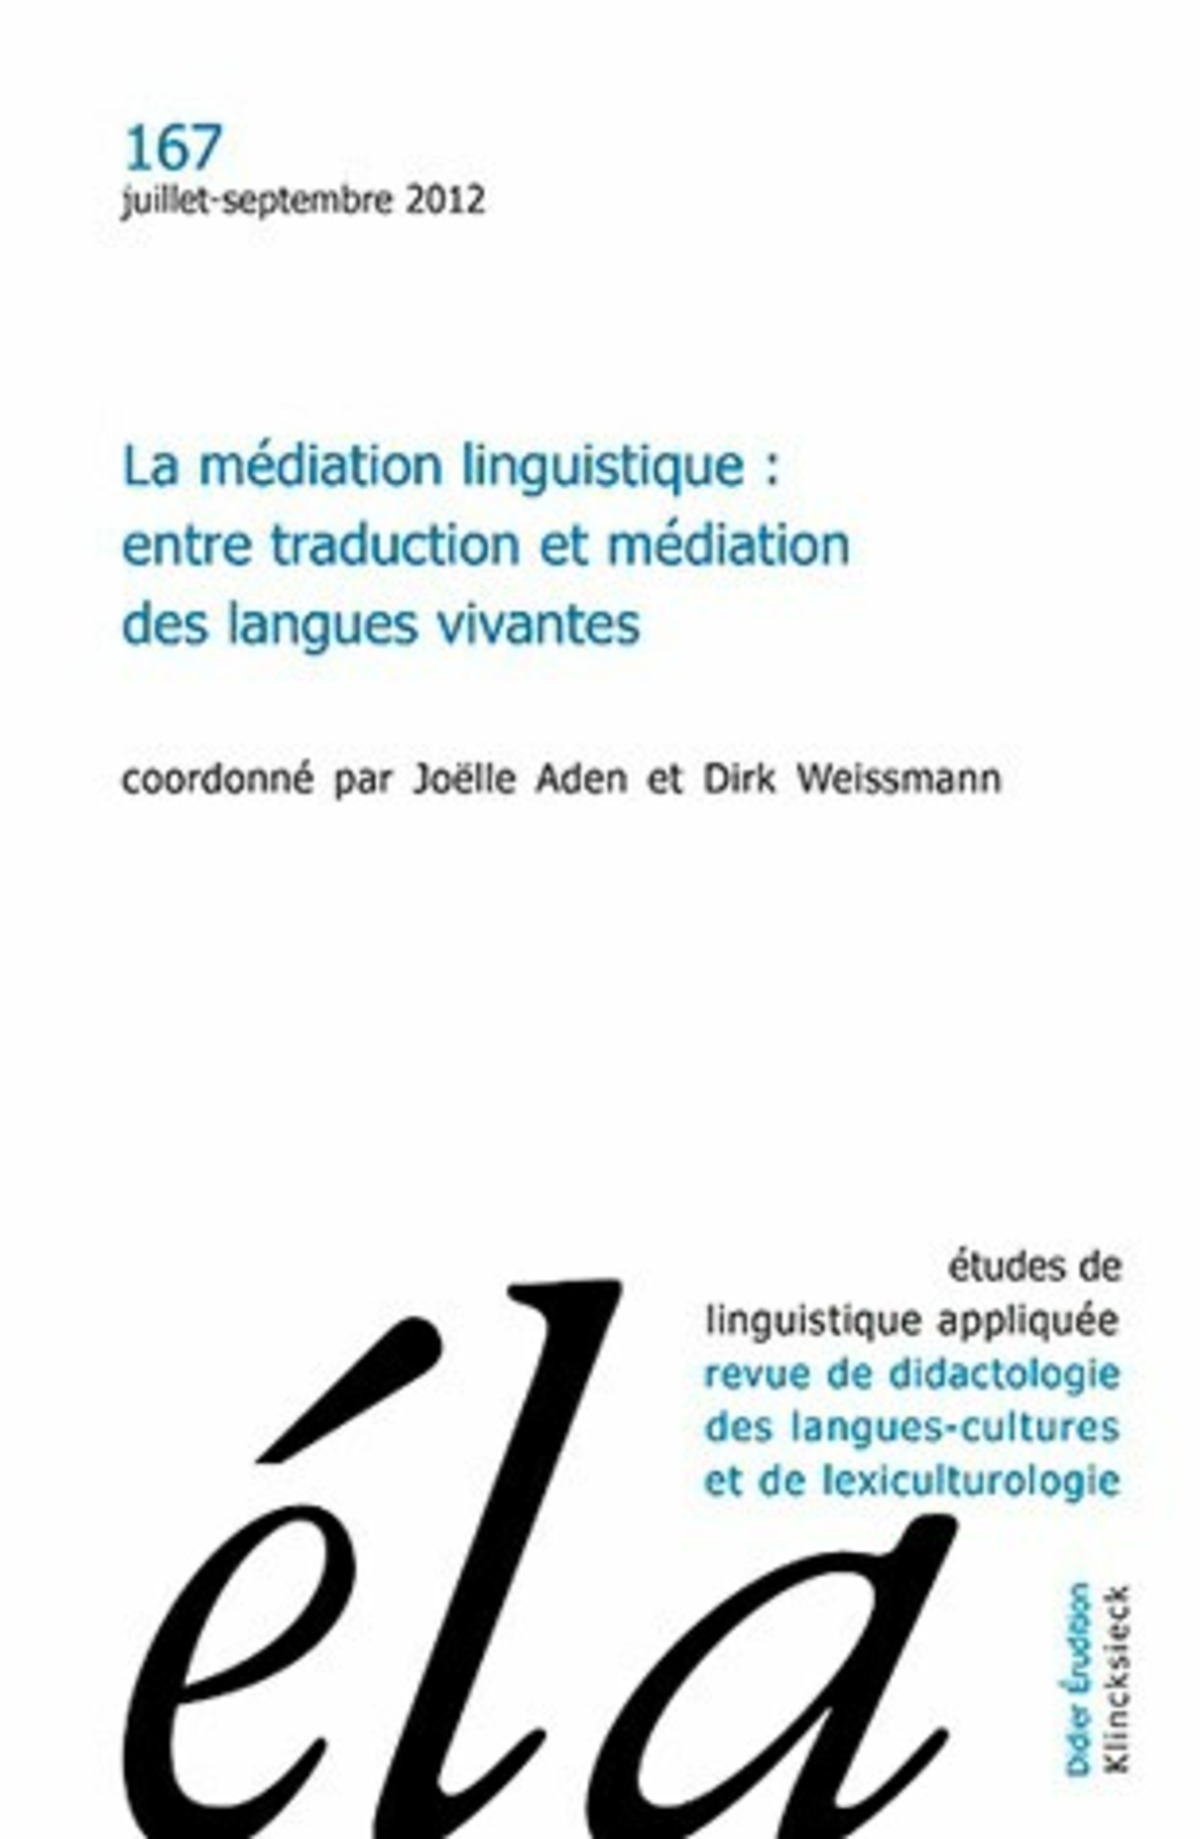 Études de linguistique appliquée n°3/2012